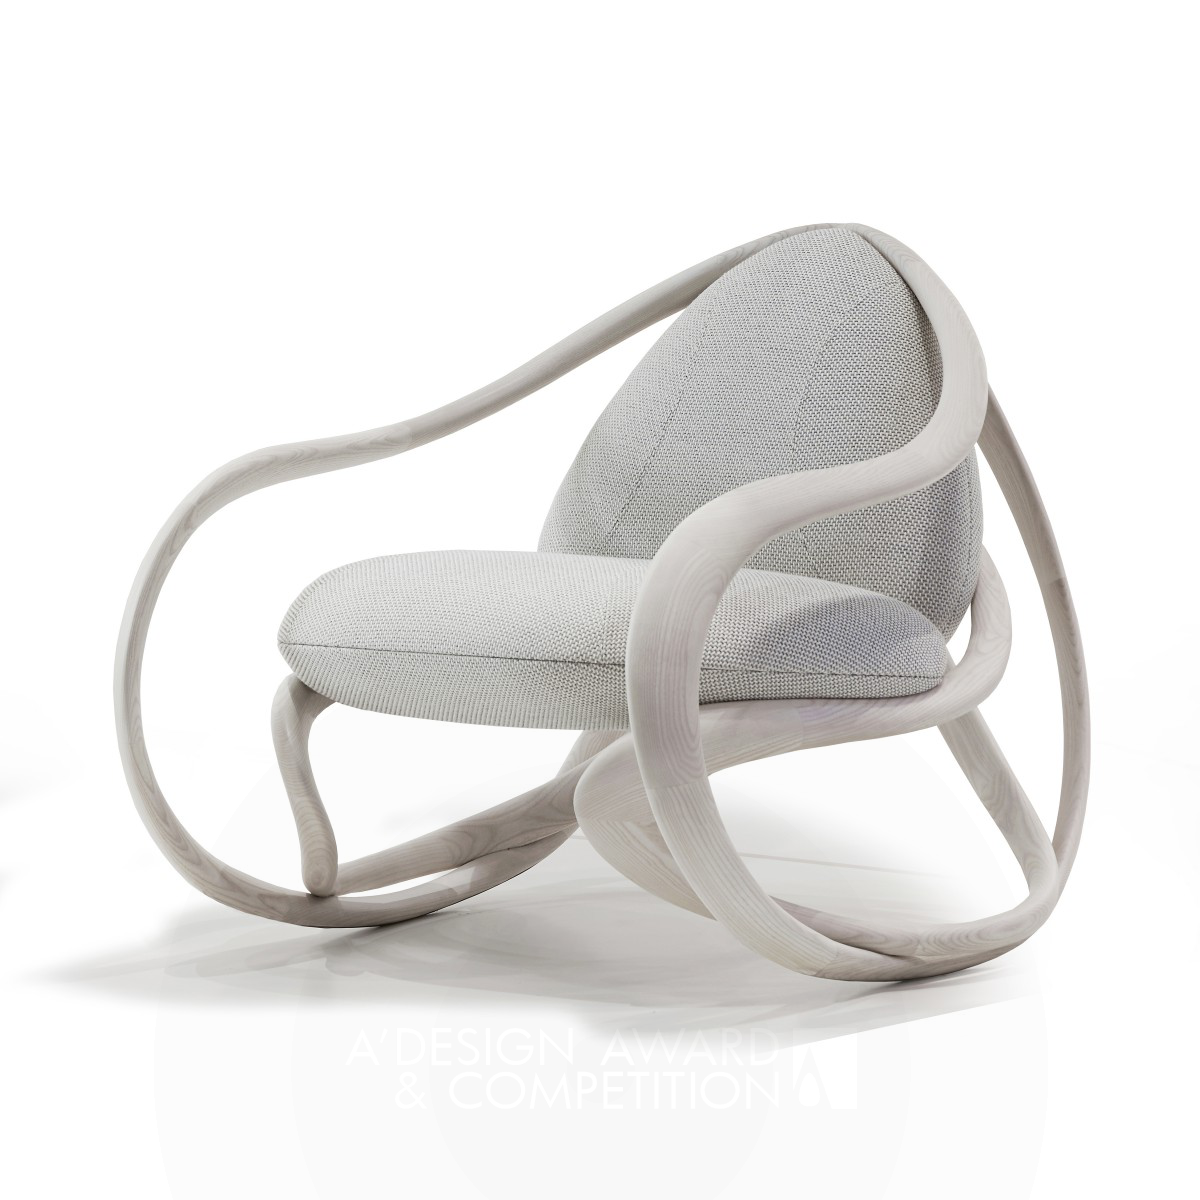 Move Rocking Chair by Rossella Pugliatti